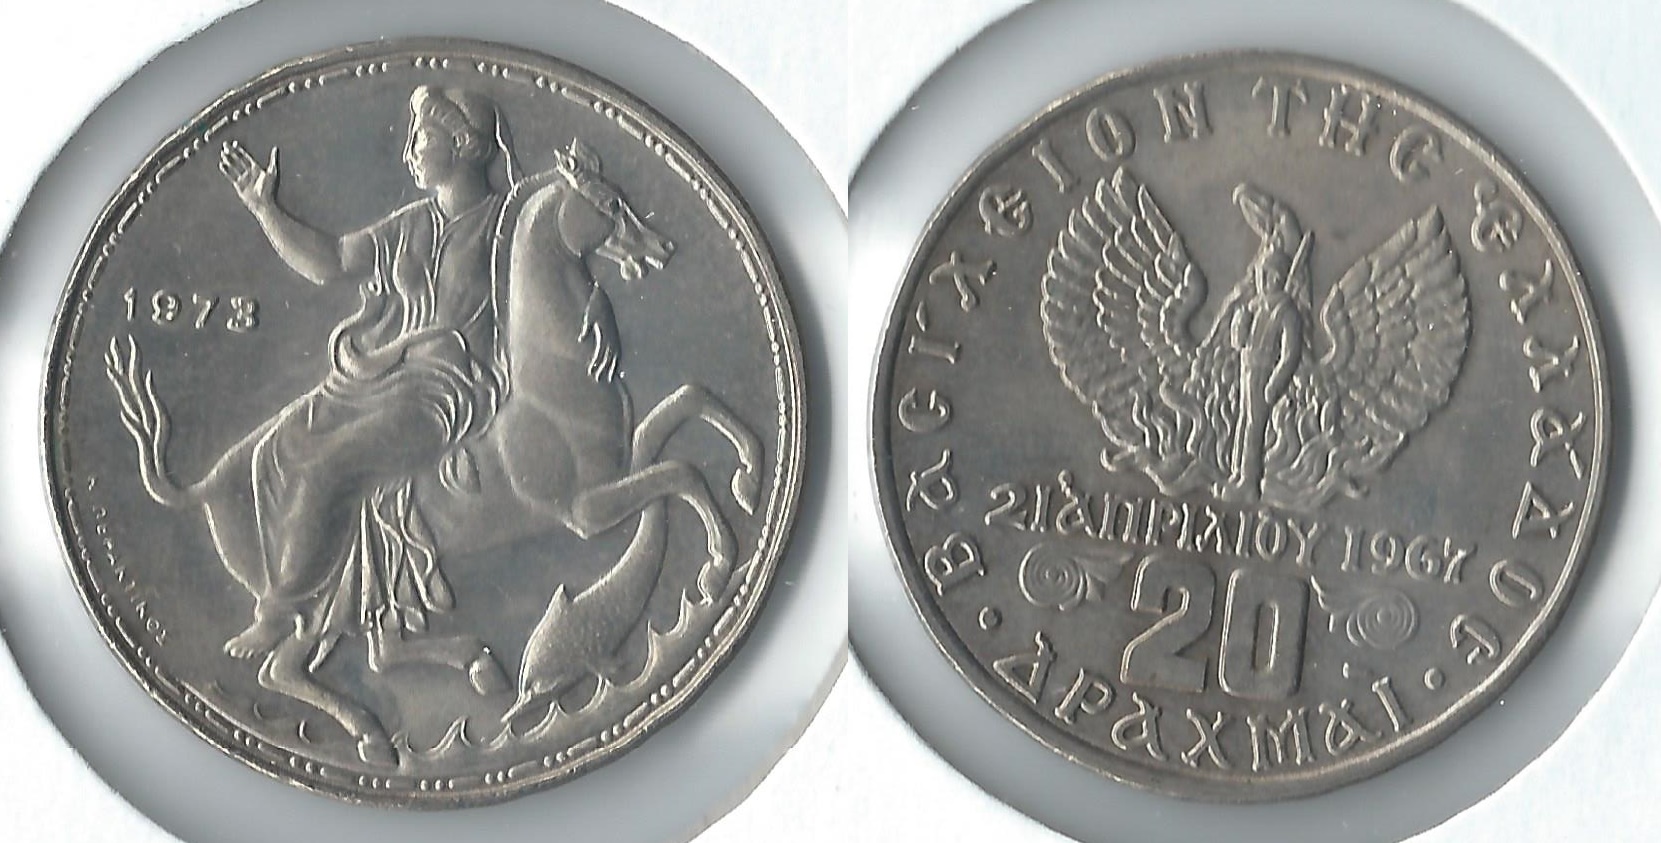 1973 greece 20 drachmai2.jpg